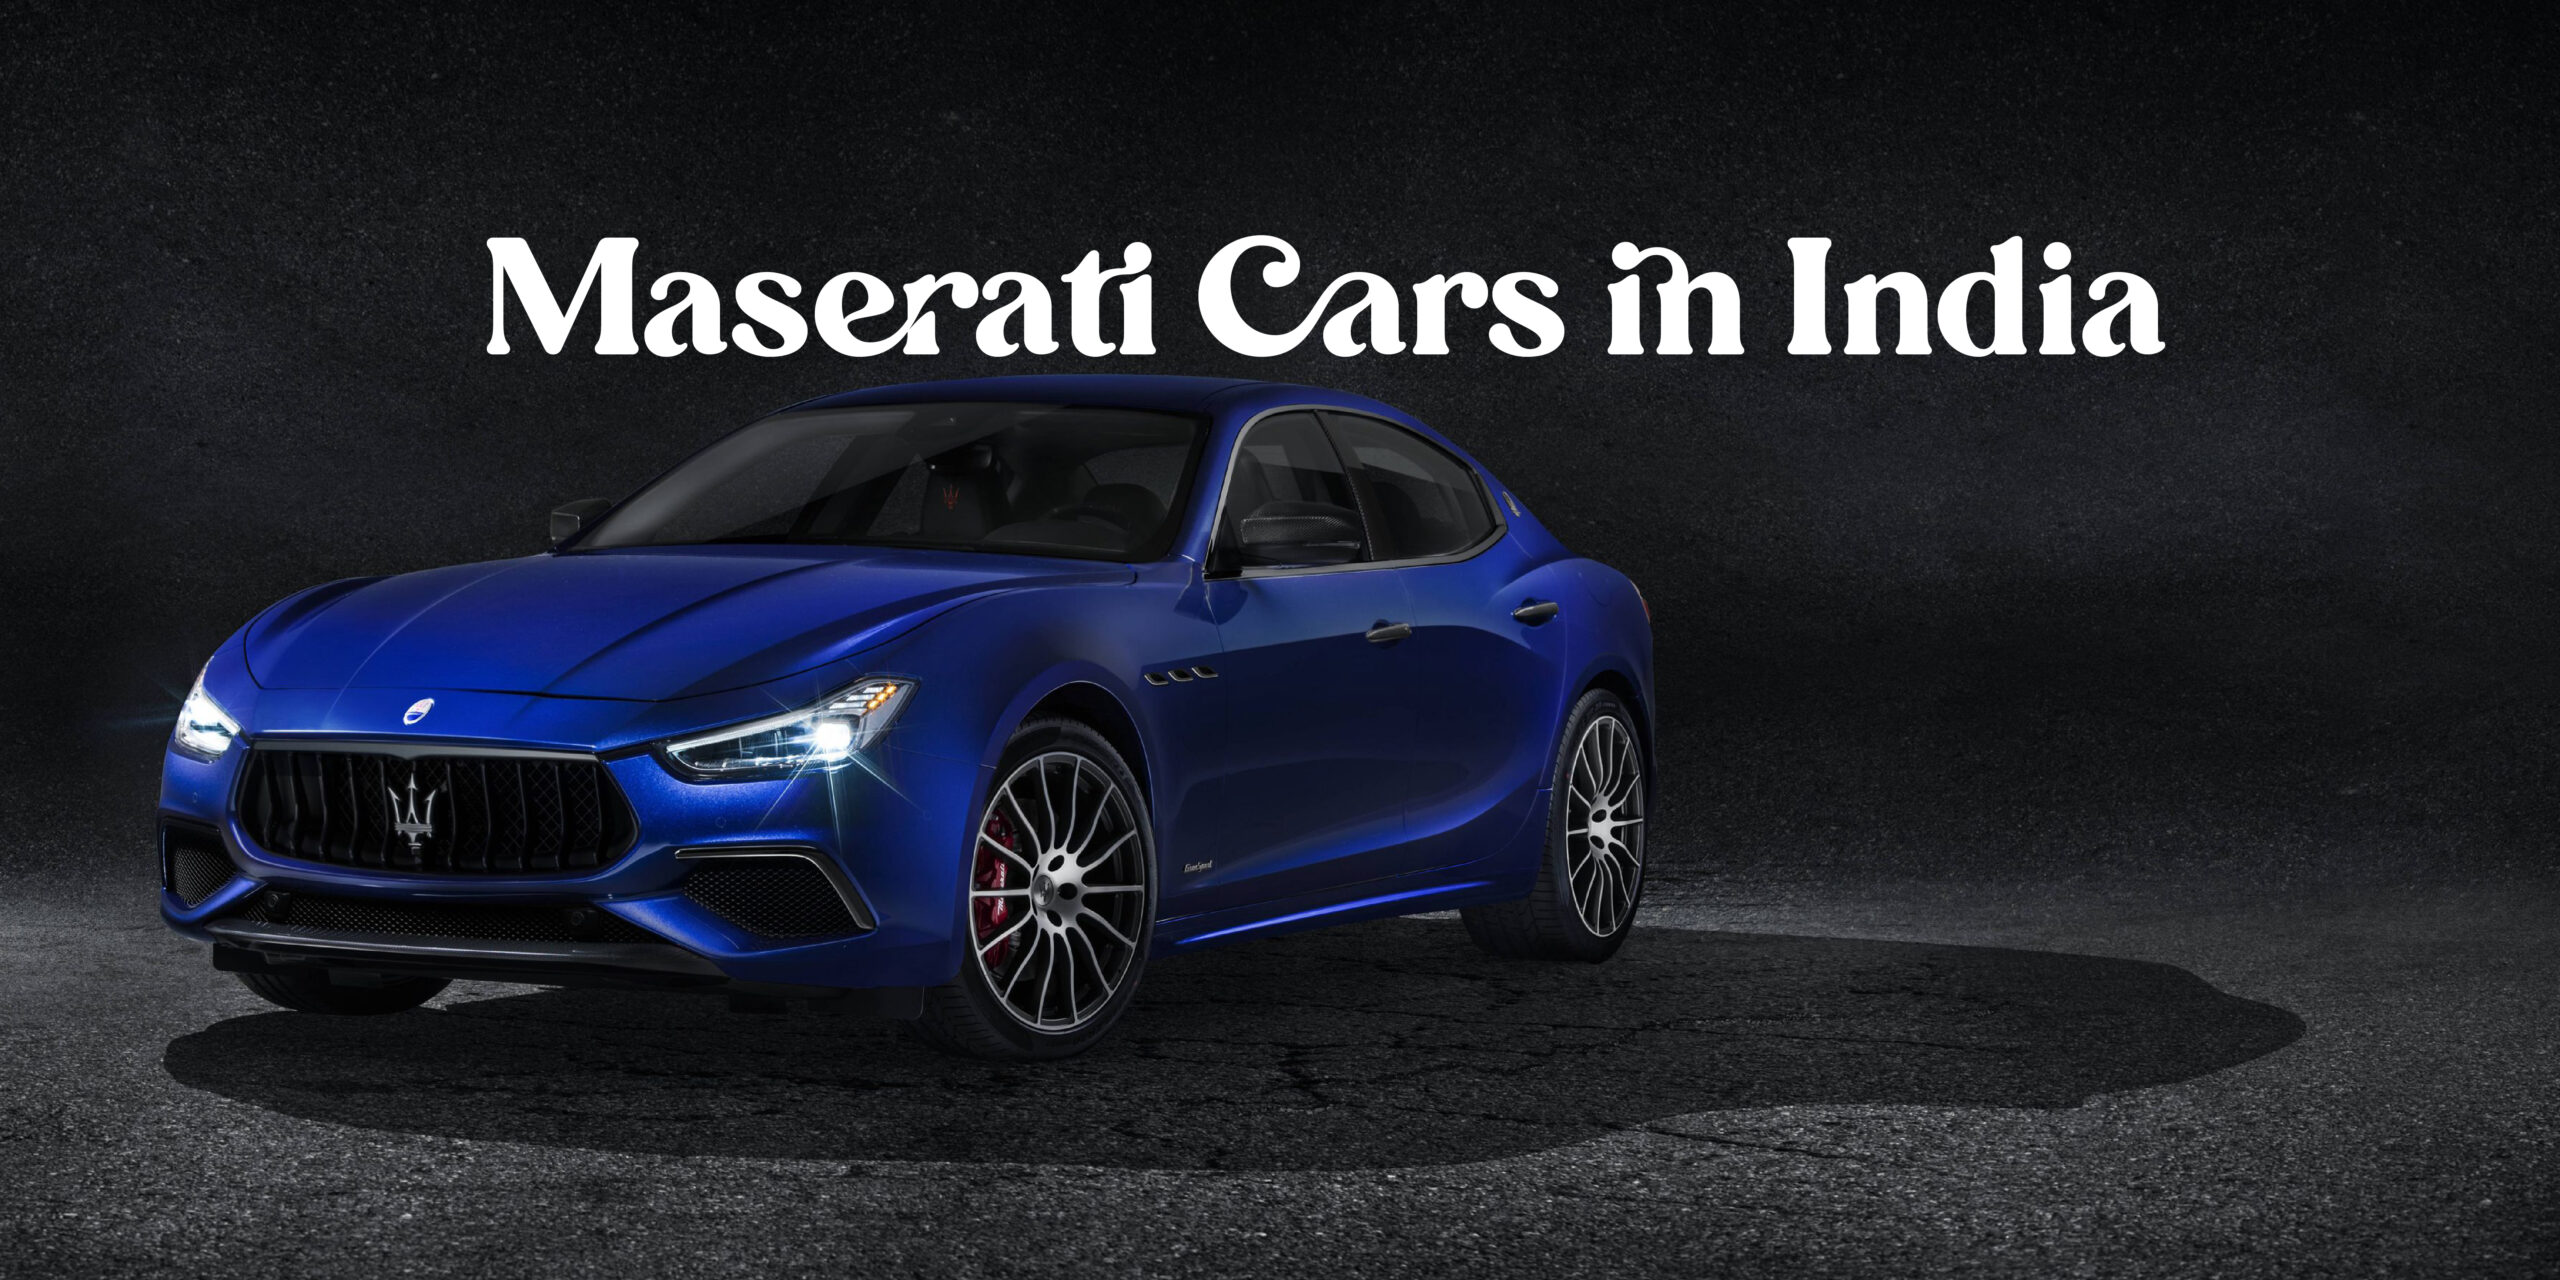 Maserati Cars|Maserati Ghibli|Maserati Levante|Maserati Quattroporte|Maserati MC20